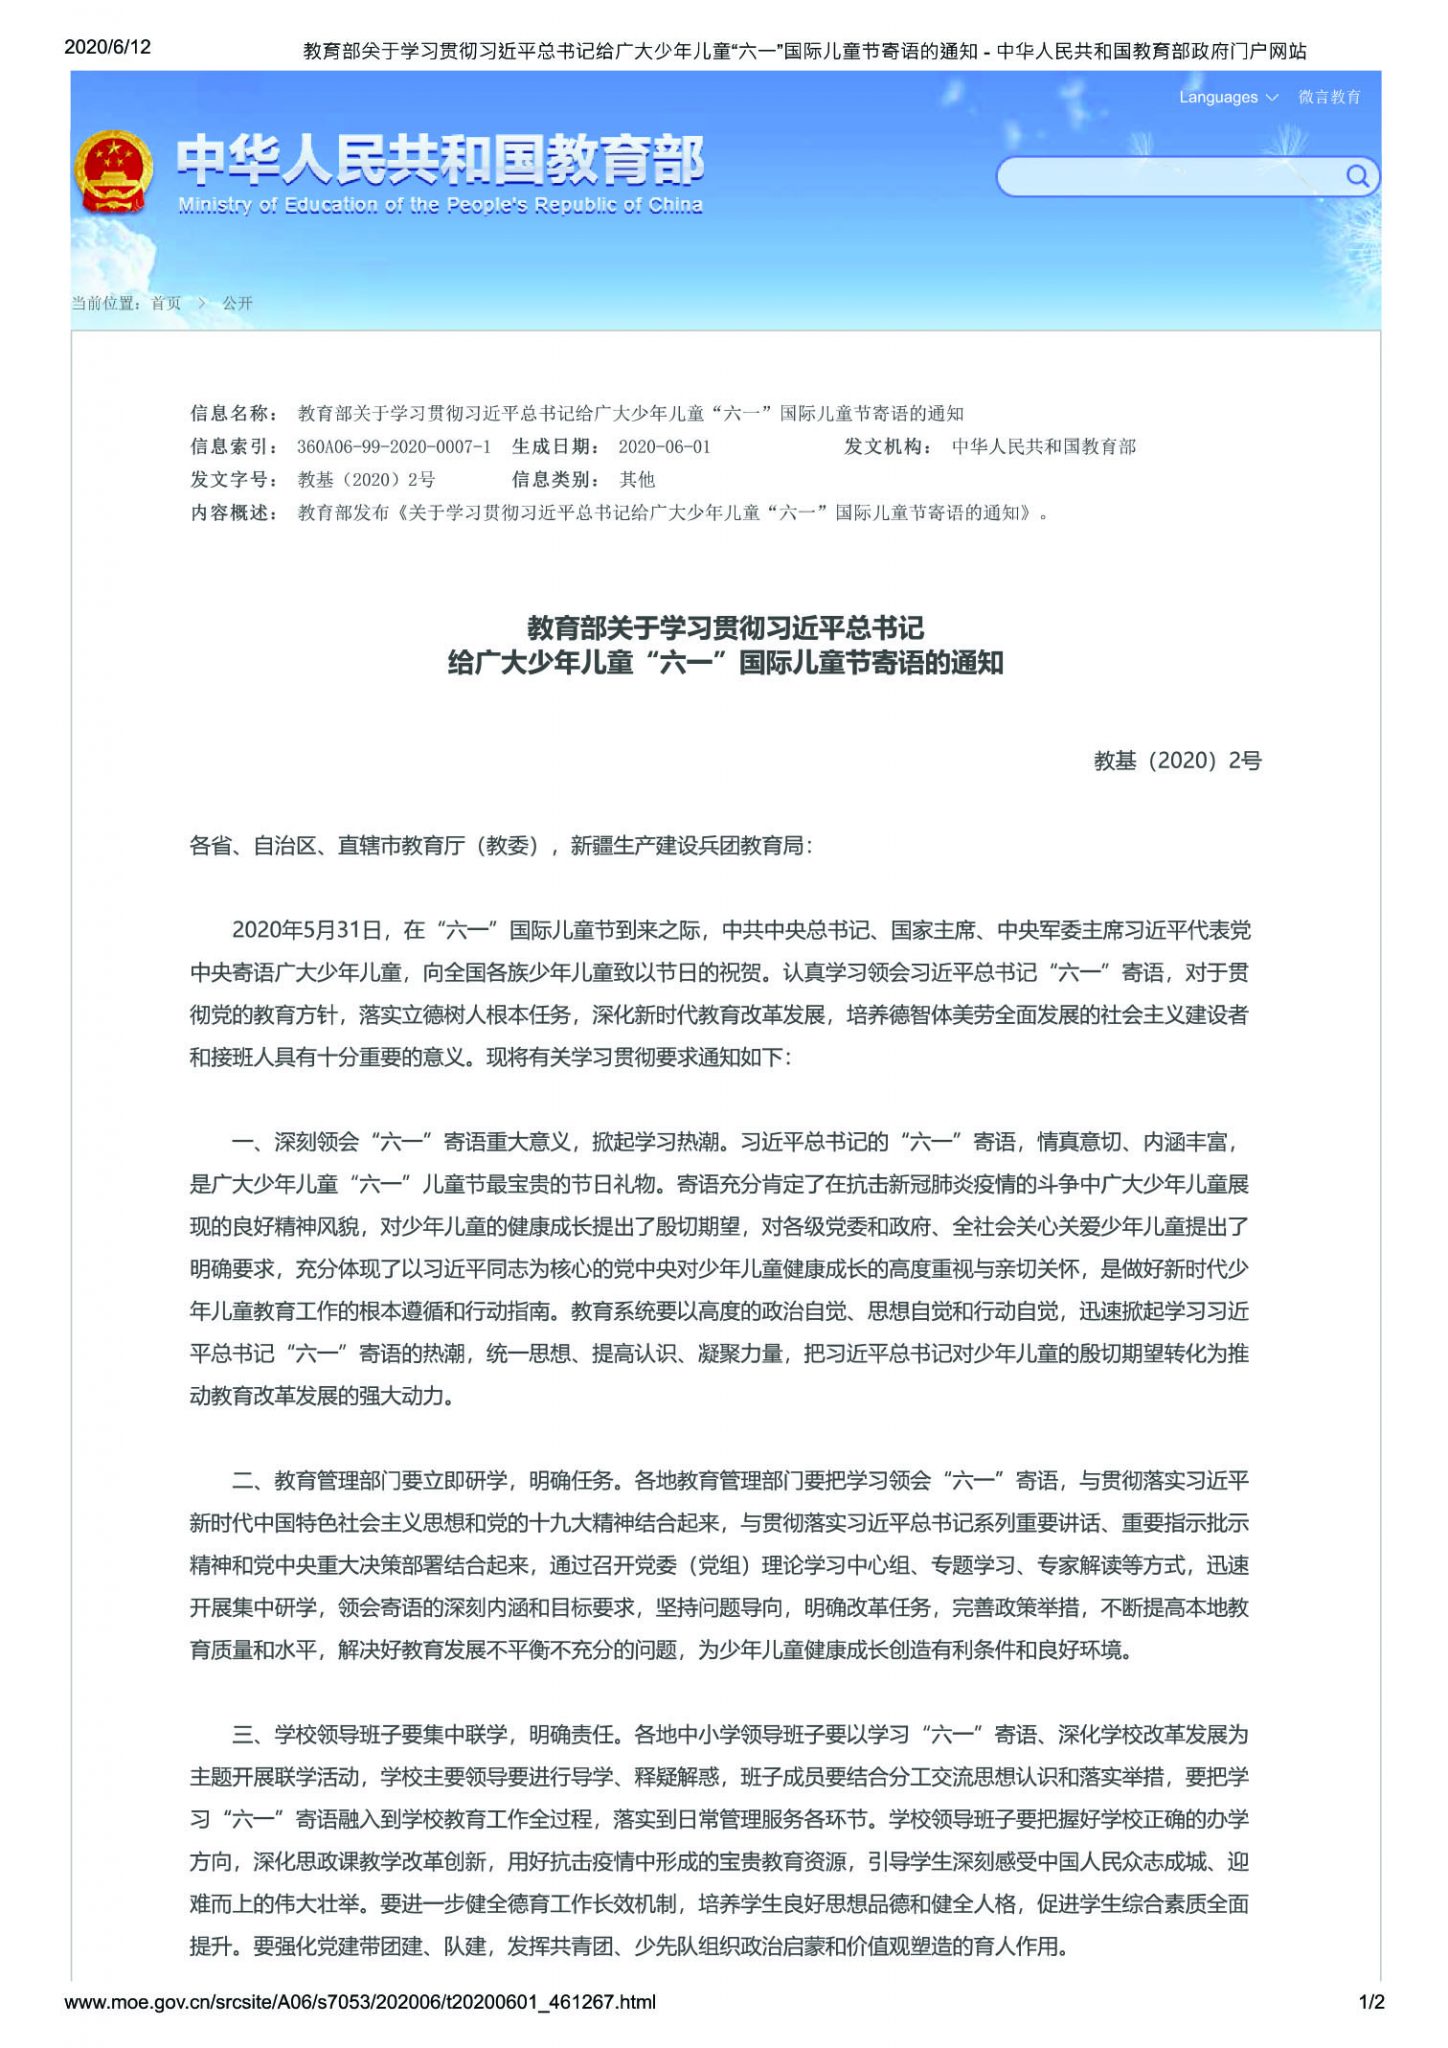 El Aviso sobre el estudio y la implementación del mensaje dado por el presidente Xi Jinping